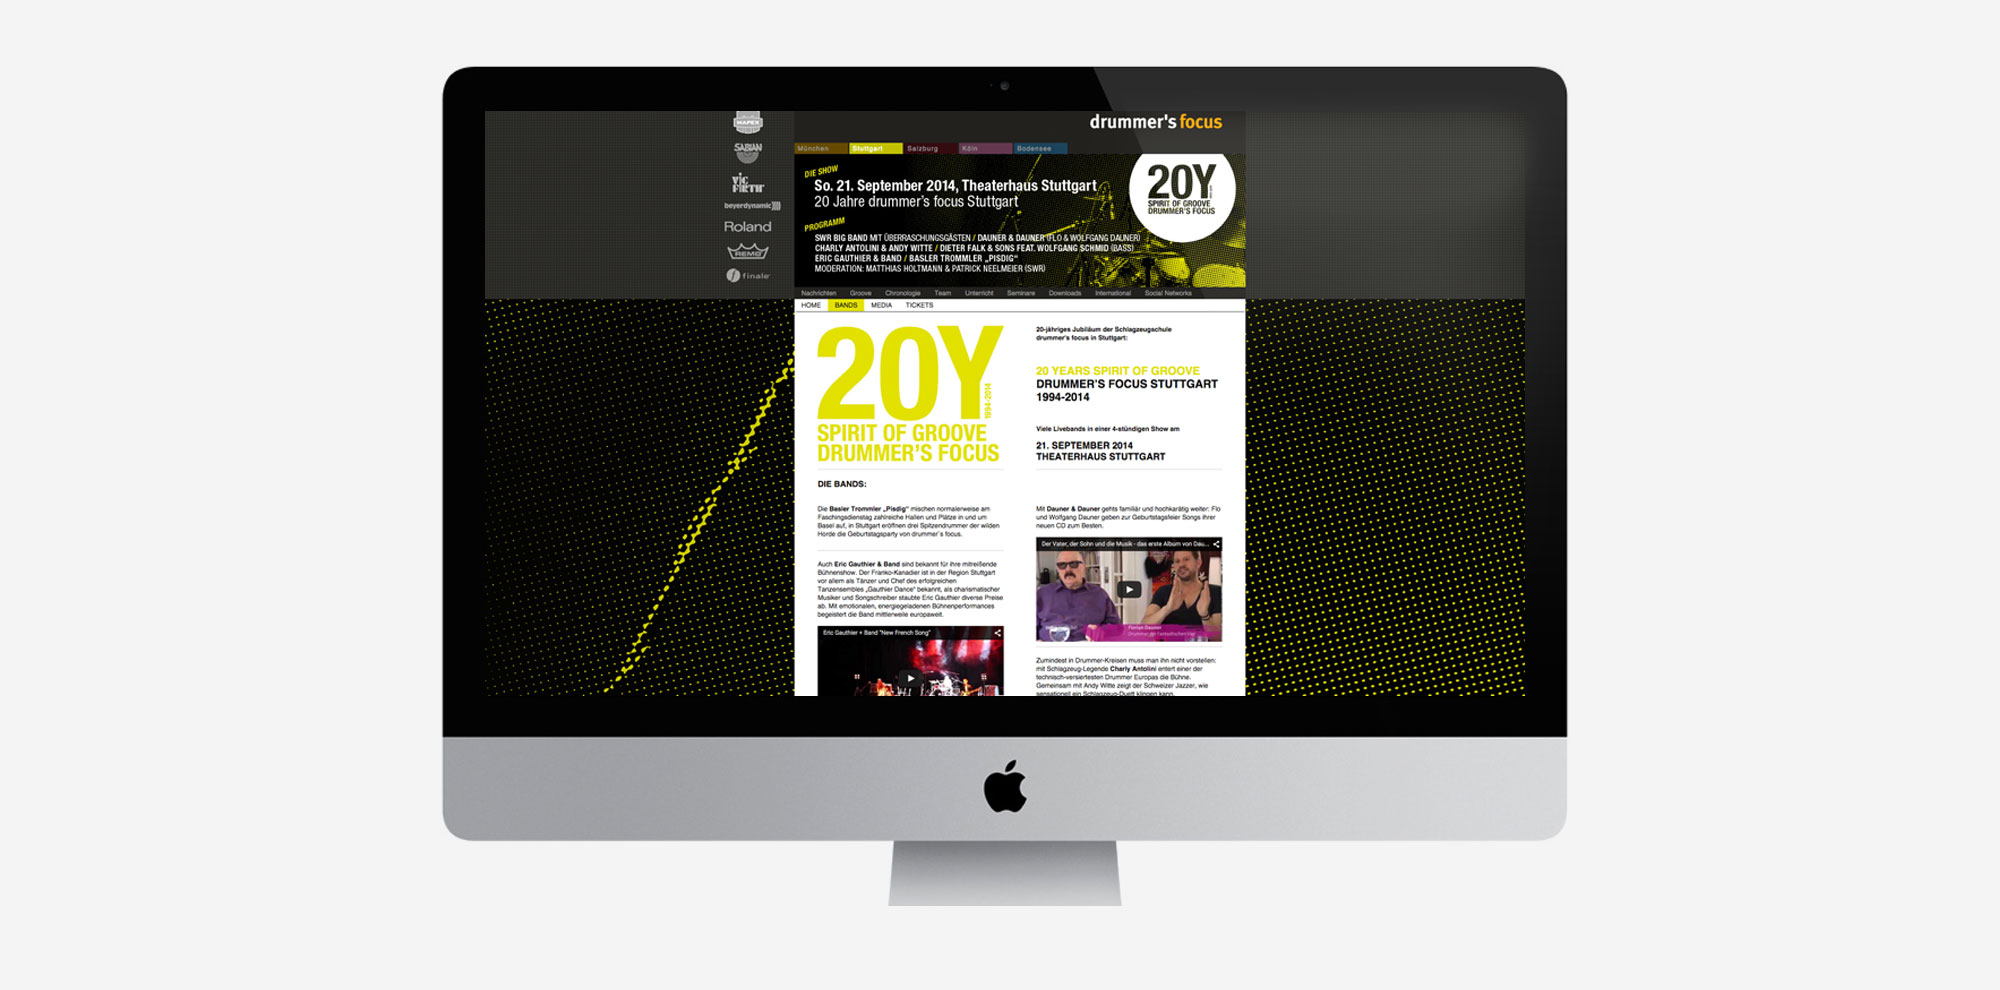 75a Büro für Gestaltung aus Stuttgart gestaltet die Website für 20Y drummer's focus Stuttgart